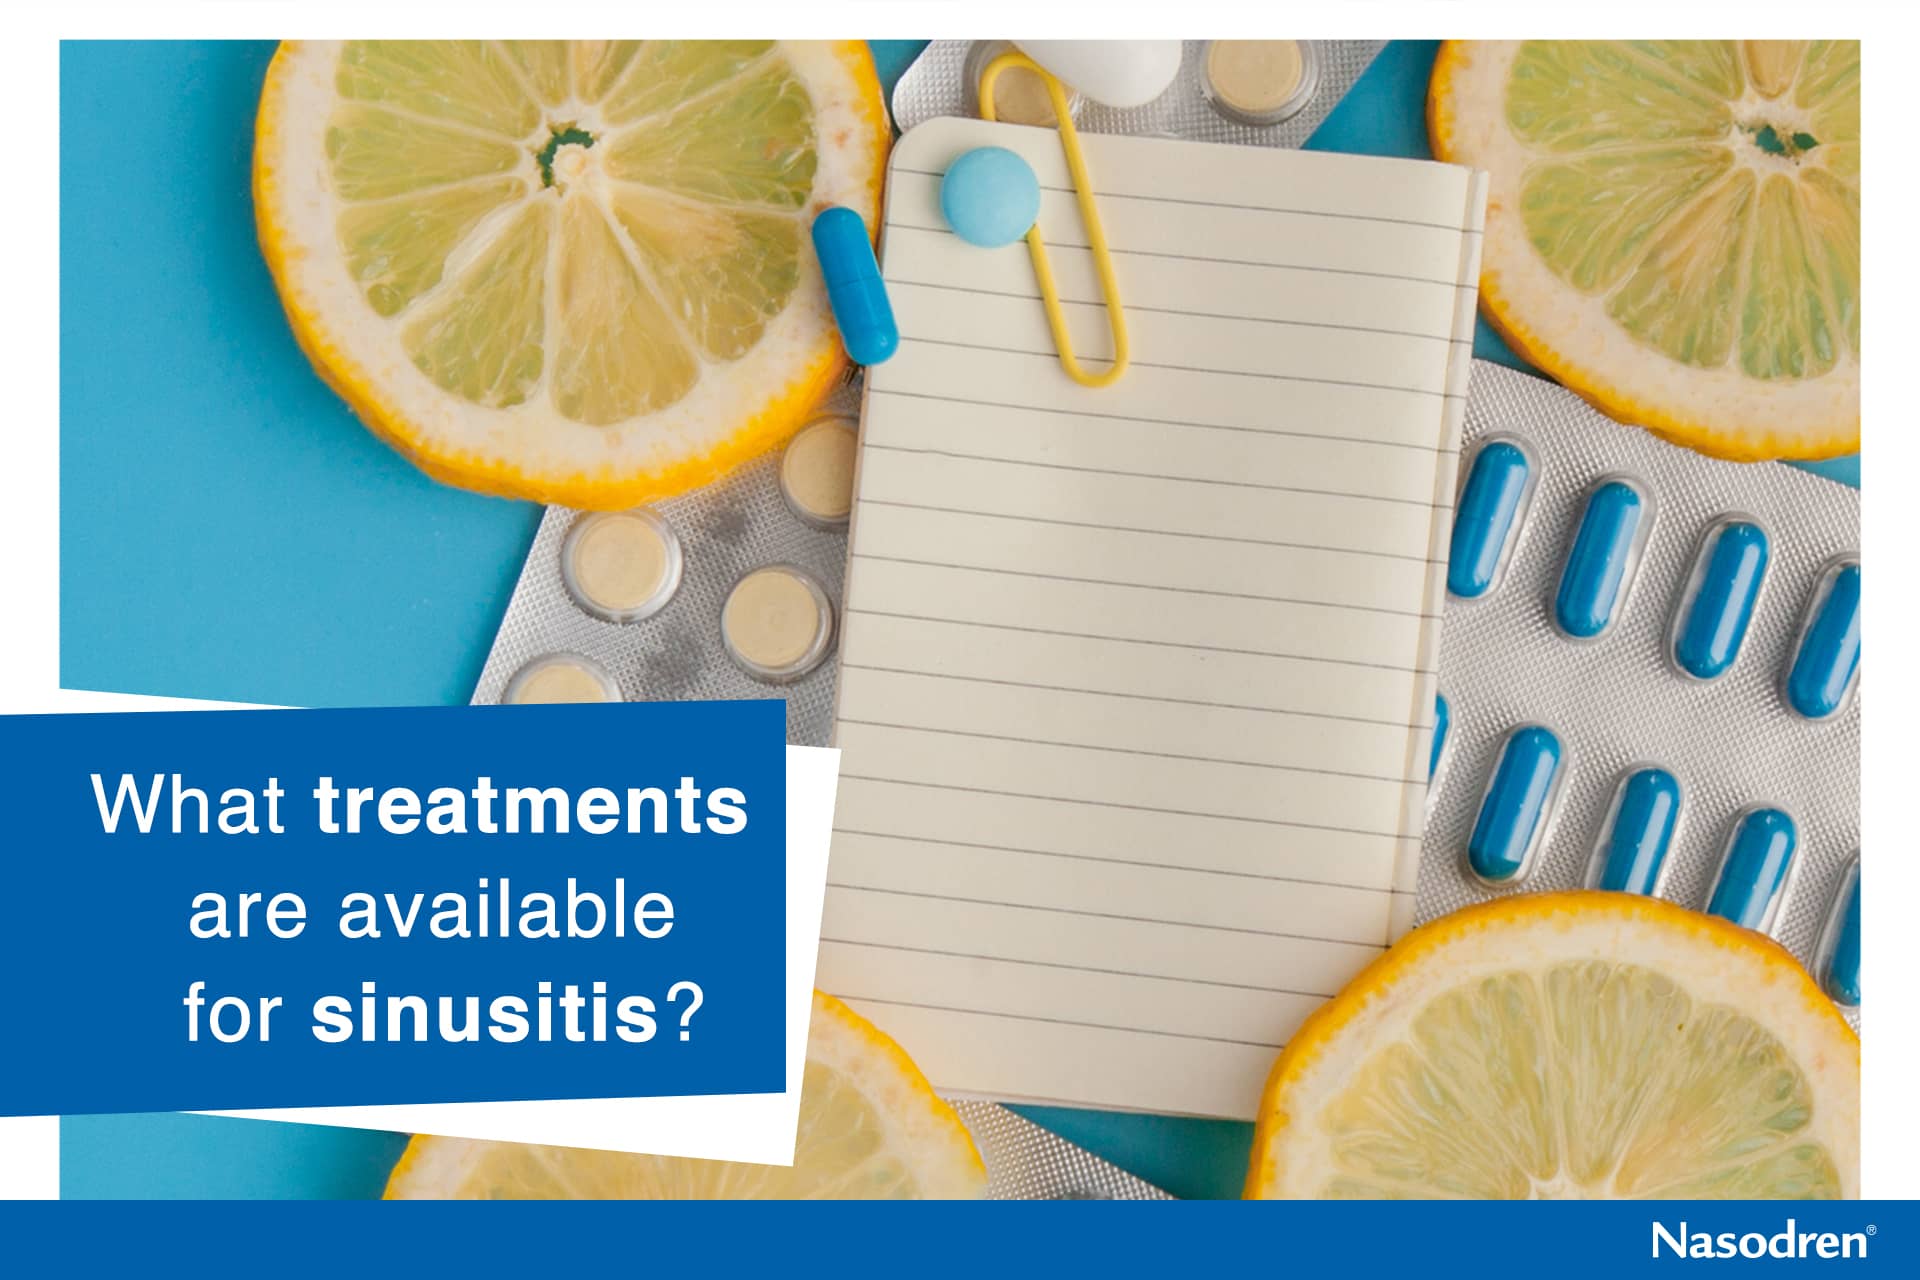 sinusitis treatments available